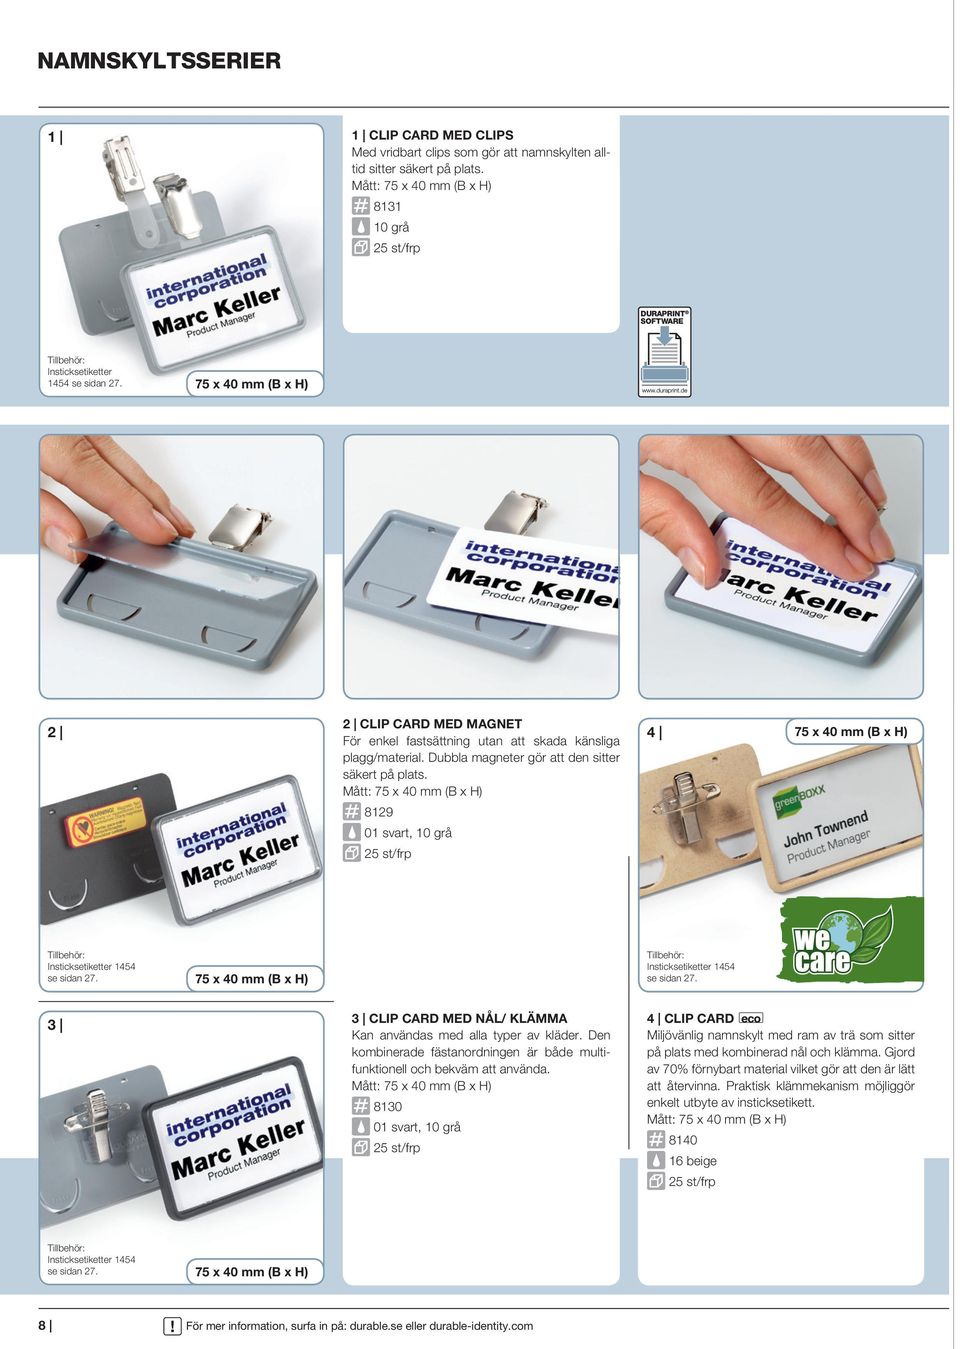 COM 75 x 40 mm (B x H) 2 CLIP CARD MED MAGNET För enkel fastsättning utan att skada känsliga plagg/material. Dubbla magneter gör att den sitter säkert på plats.